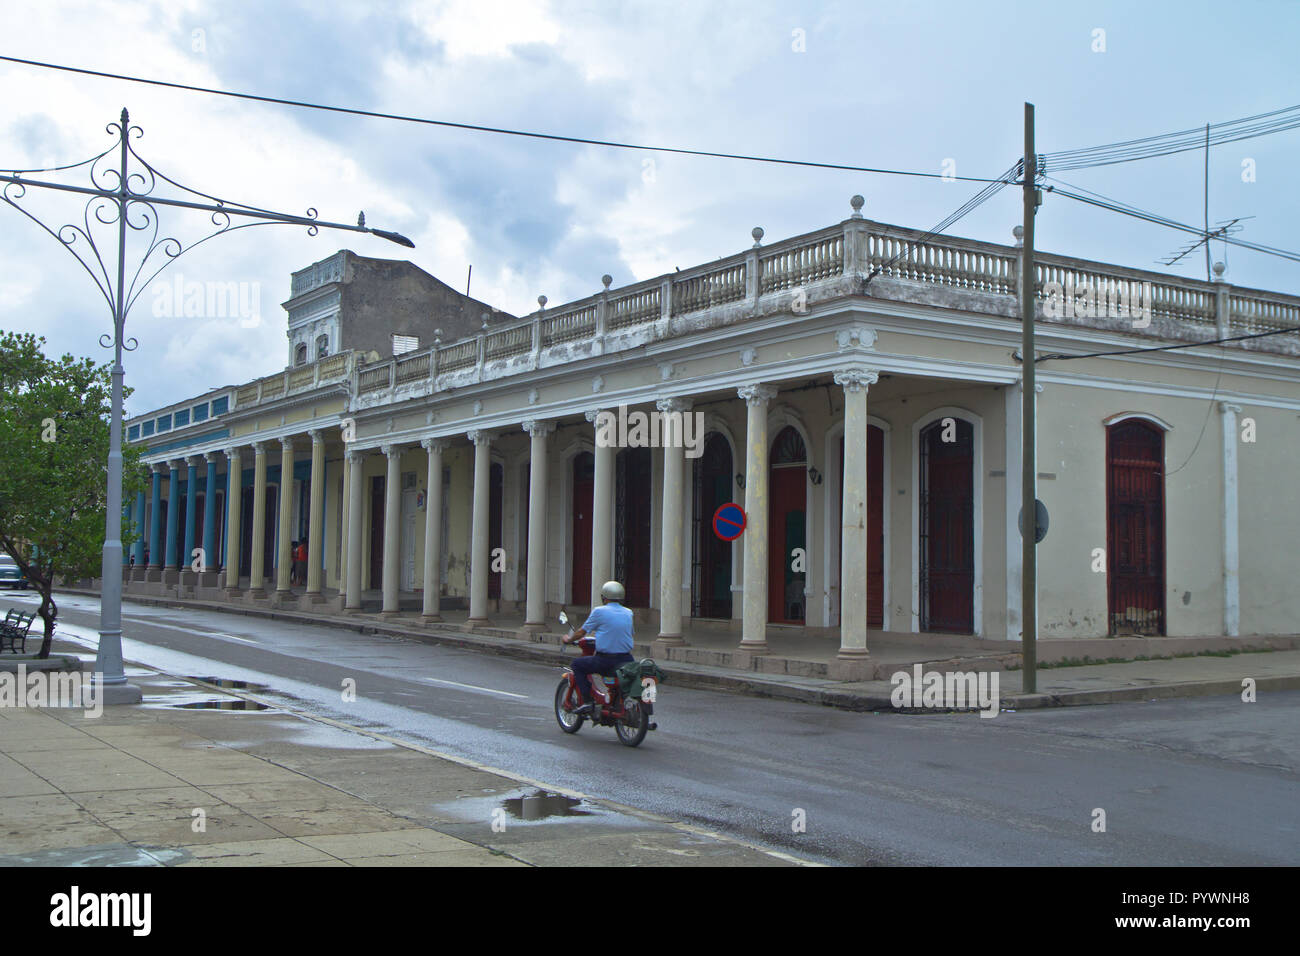 L'Avana, Cuba, isola dei Caraibi nazione sotto il regime comunista. Esso dispone di zucchero-spiagge bianche, con campi di tabacco, leggendario i sigari e il rum. Foto Stock